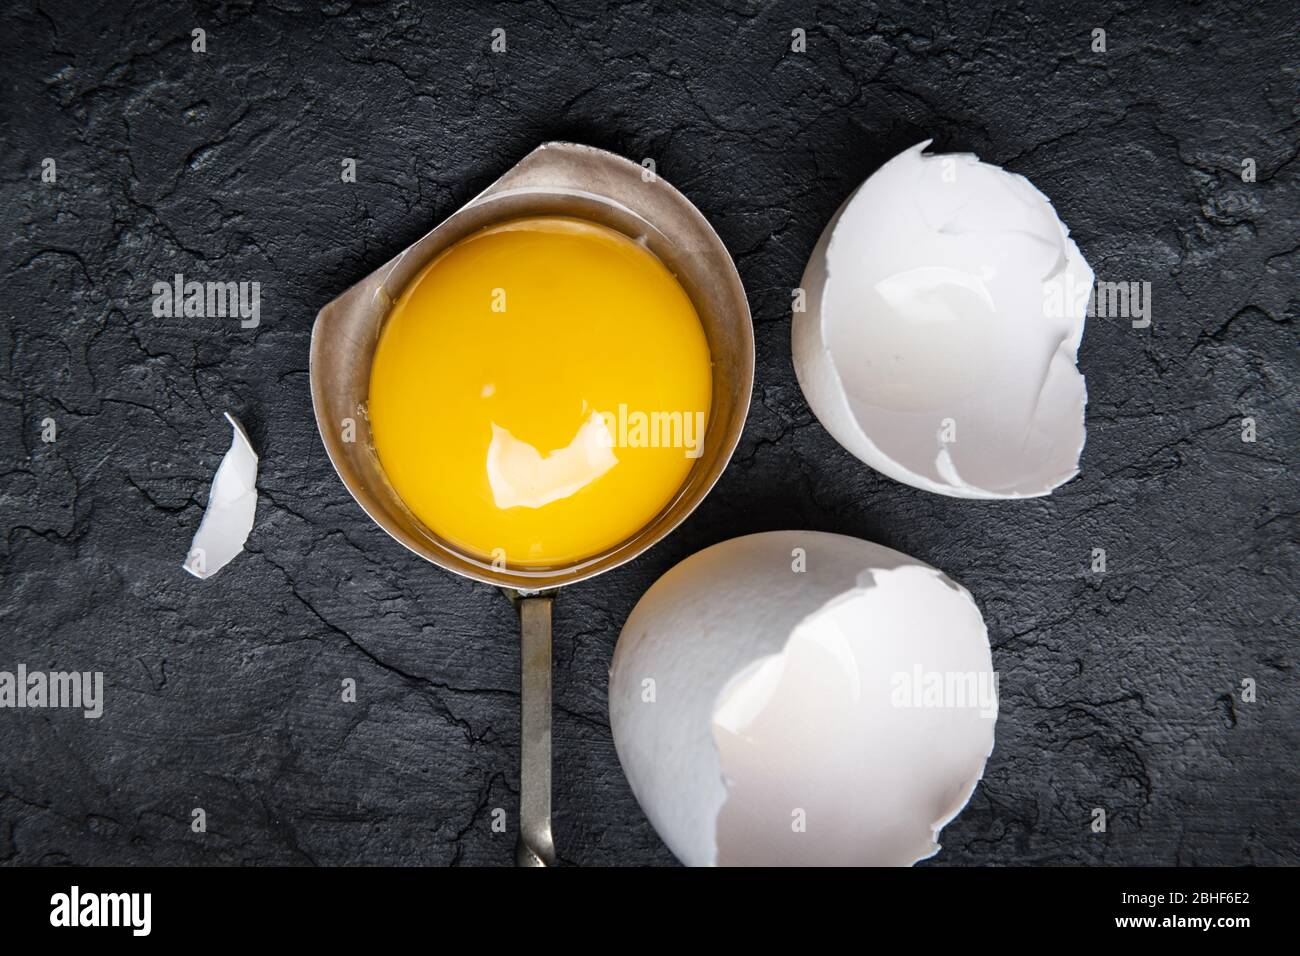 Jaune de poulet à partir d'œufs biologiques cassés dans une cuillère argentée sur fond de béton noir. Photographie alimentaire Banque D'Images